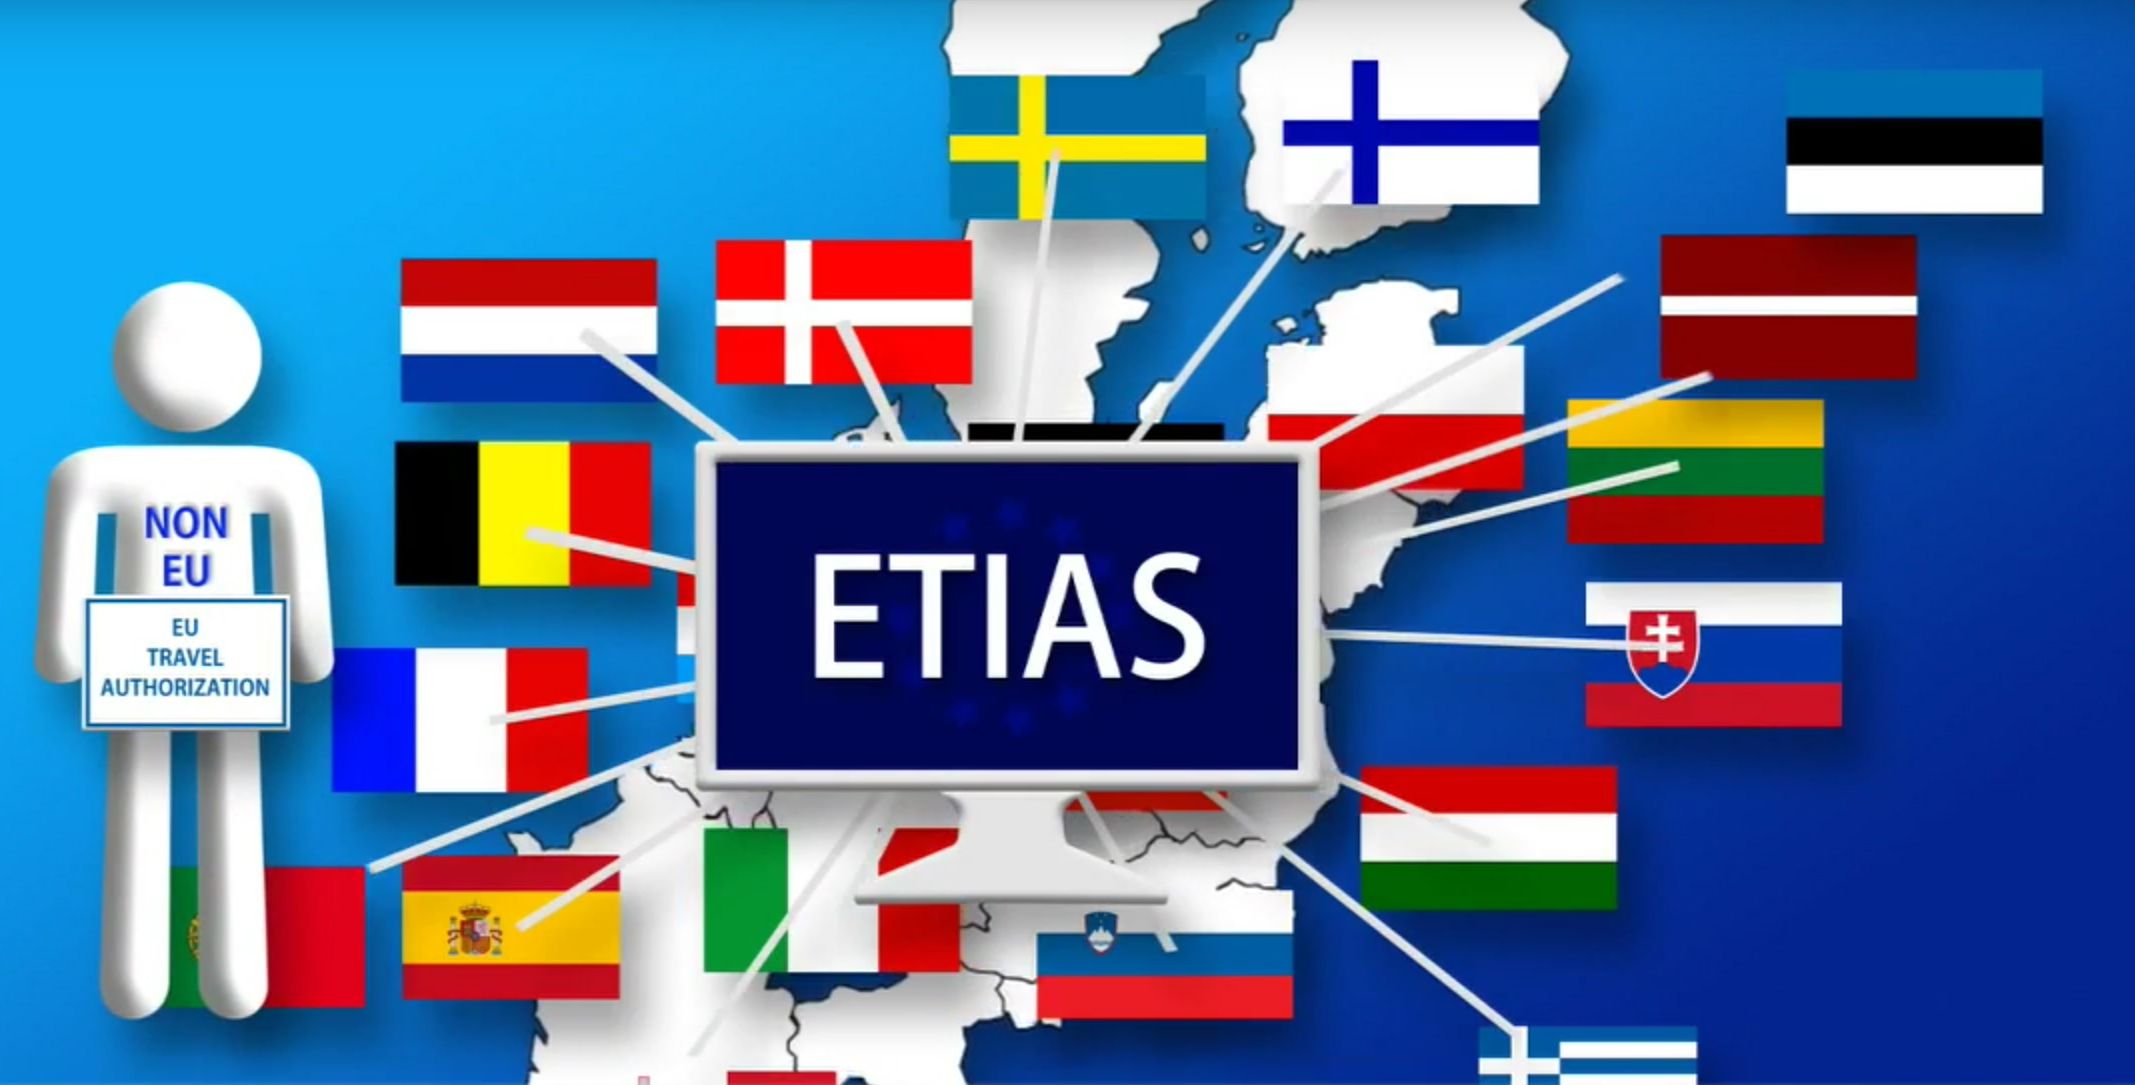 Los visitantes venezolanos tendrán que gestionar un permiso del Sistema Europeo de Información y Autorización de Viajes (ETIAS) para ingresar a la UE